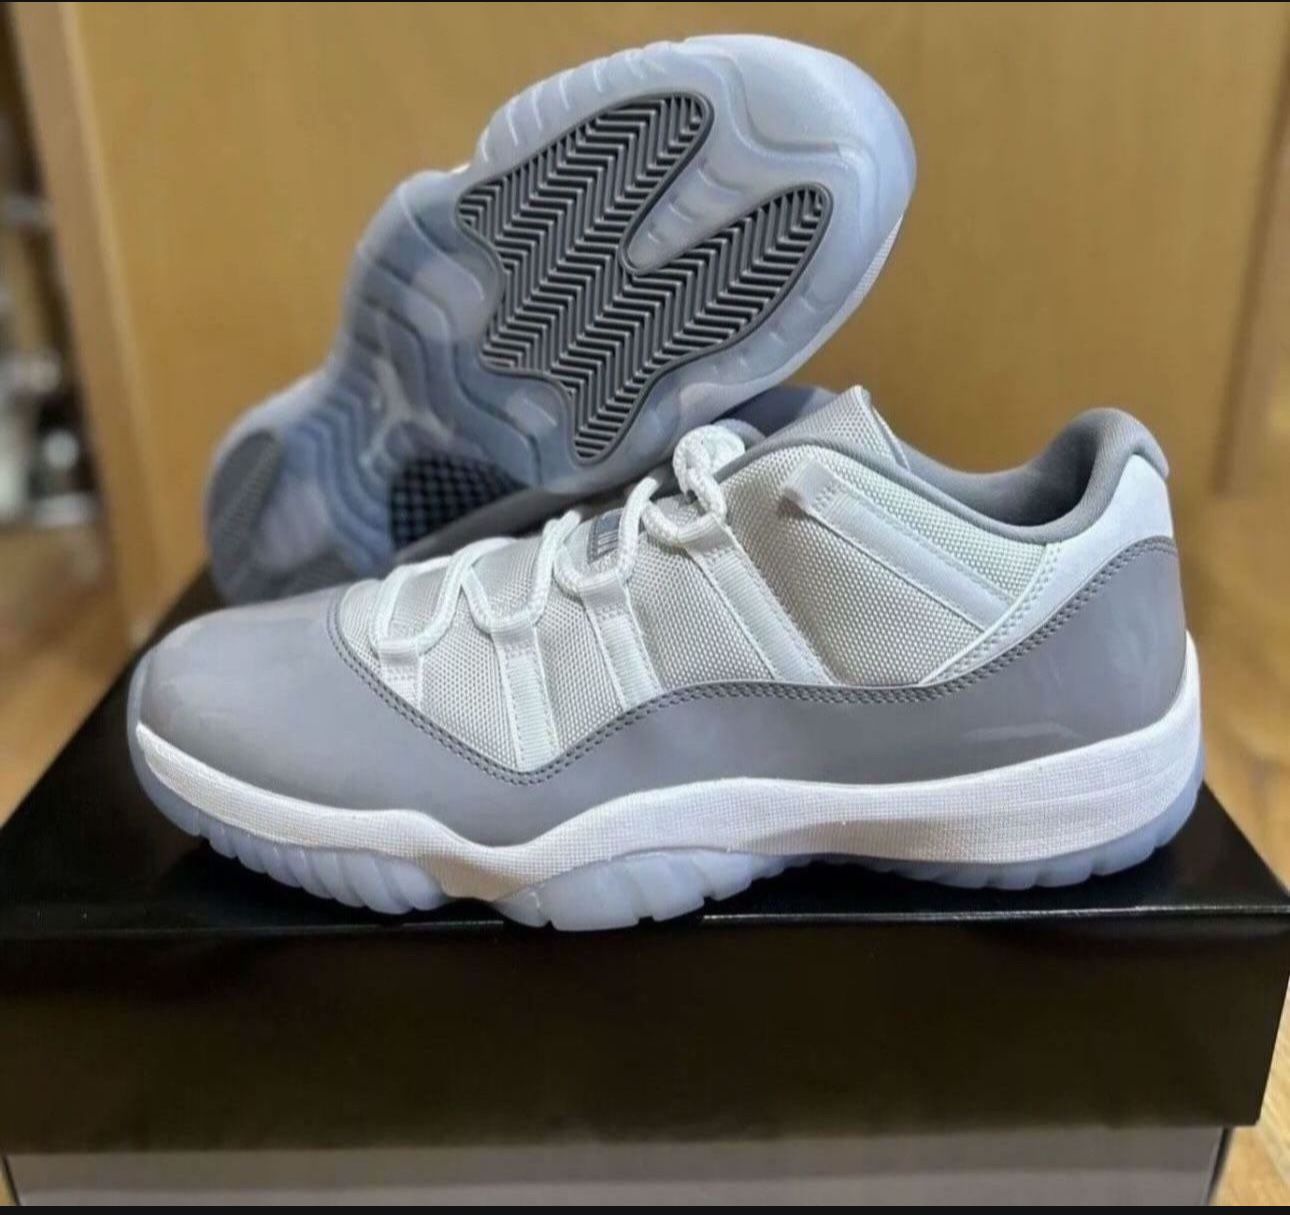 Nike Air Jordan 11 Low Retro Cement Grey White AV2187-140 size 12 Brand New